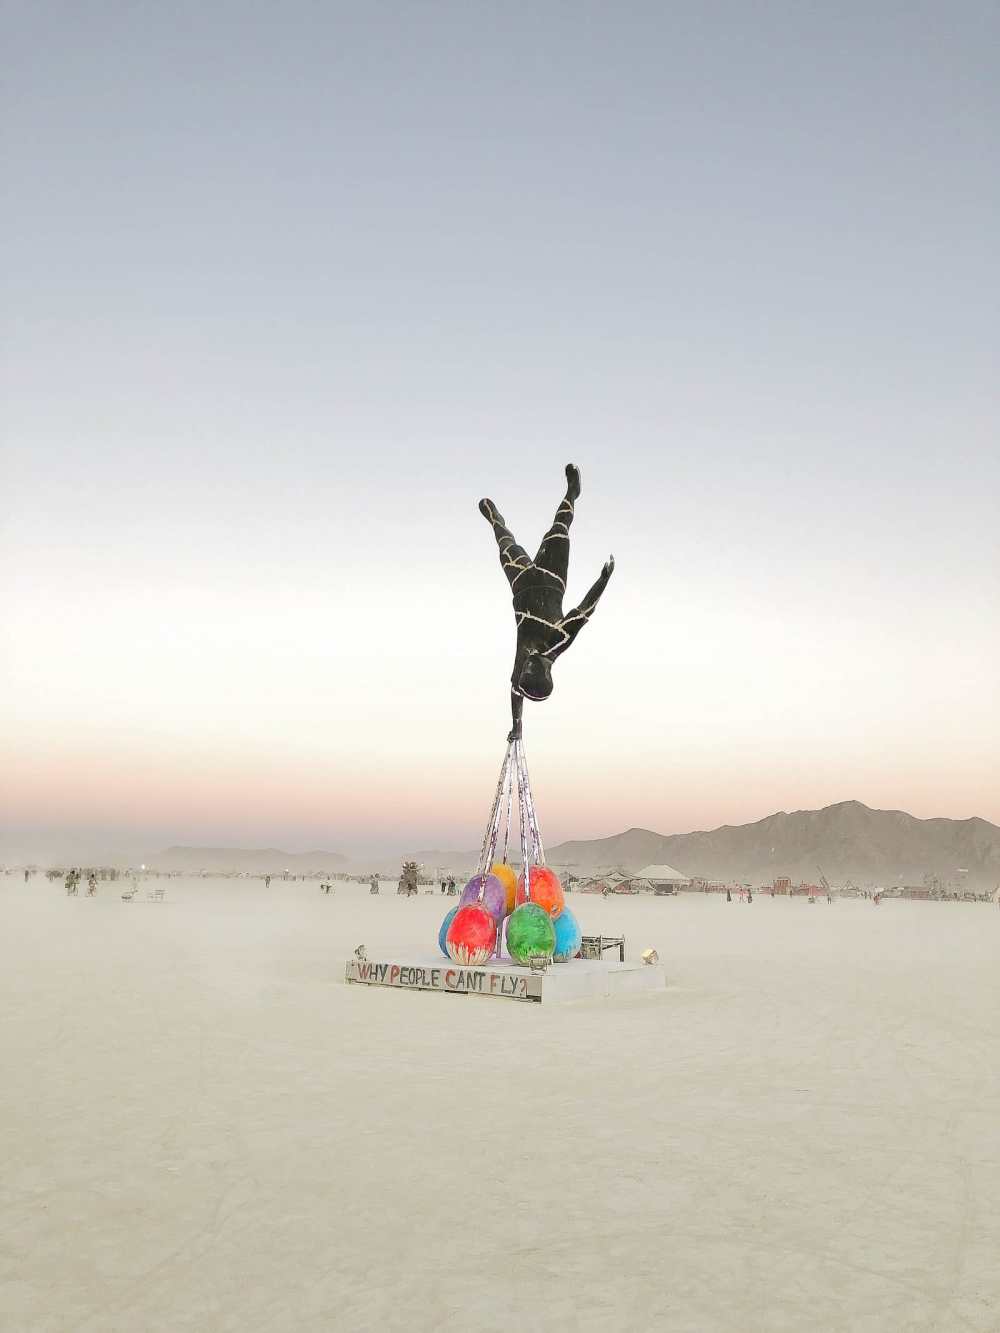  Руководство для начинающих по Burning Man (32) 